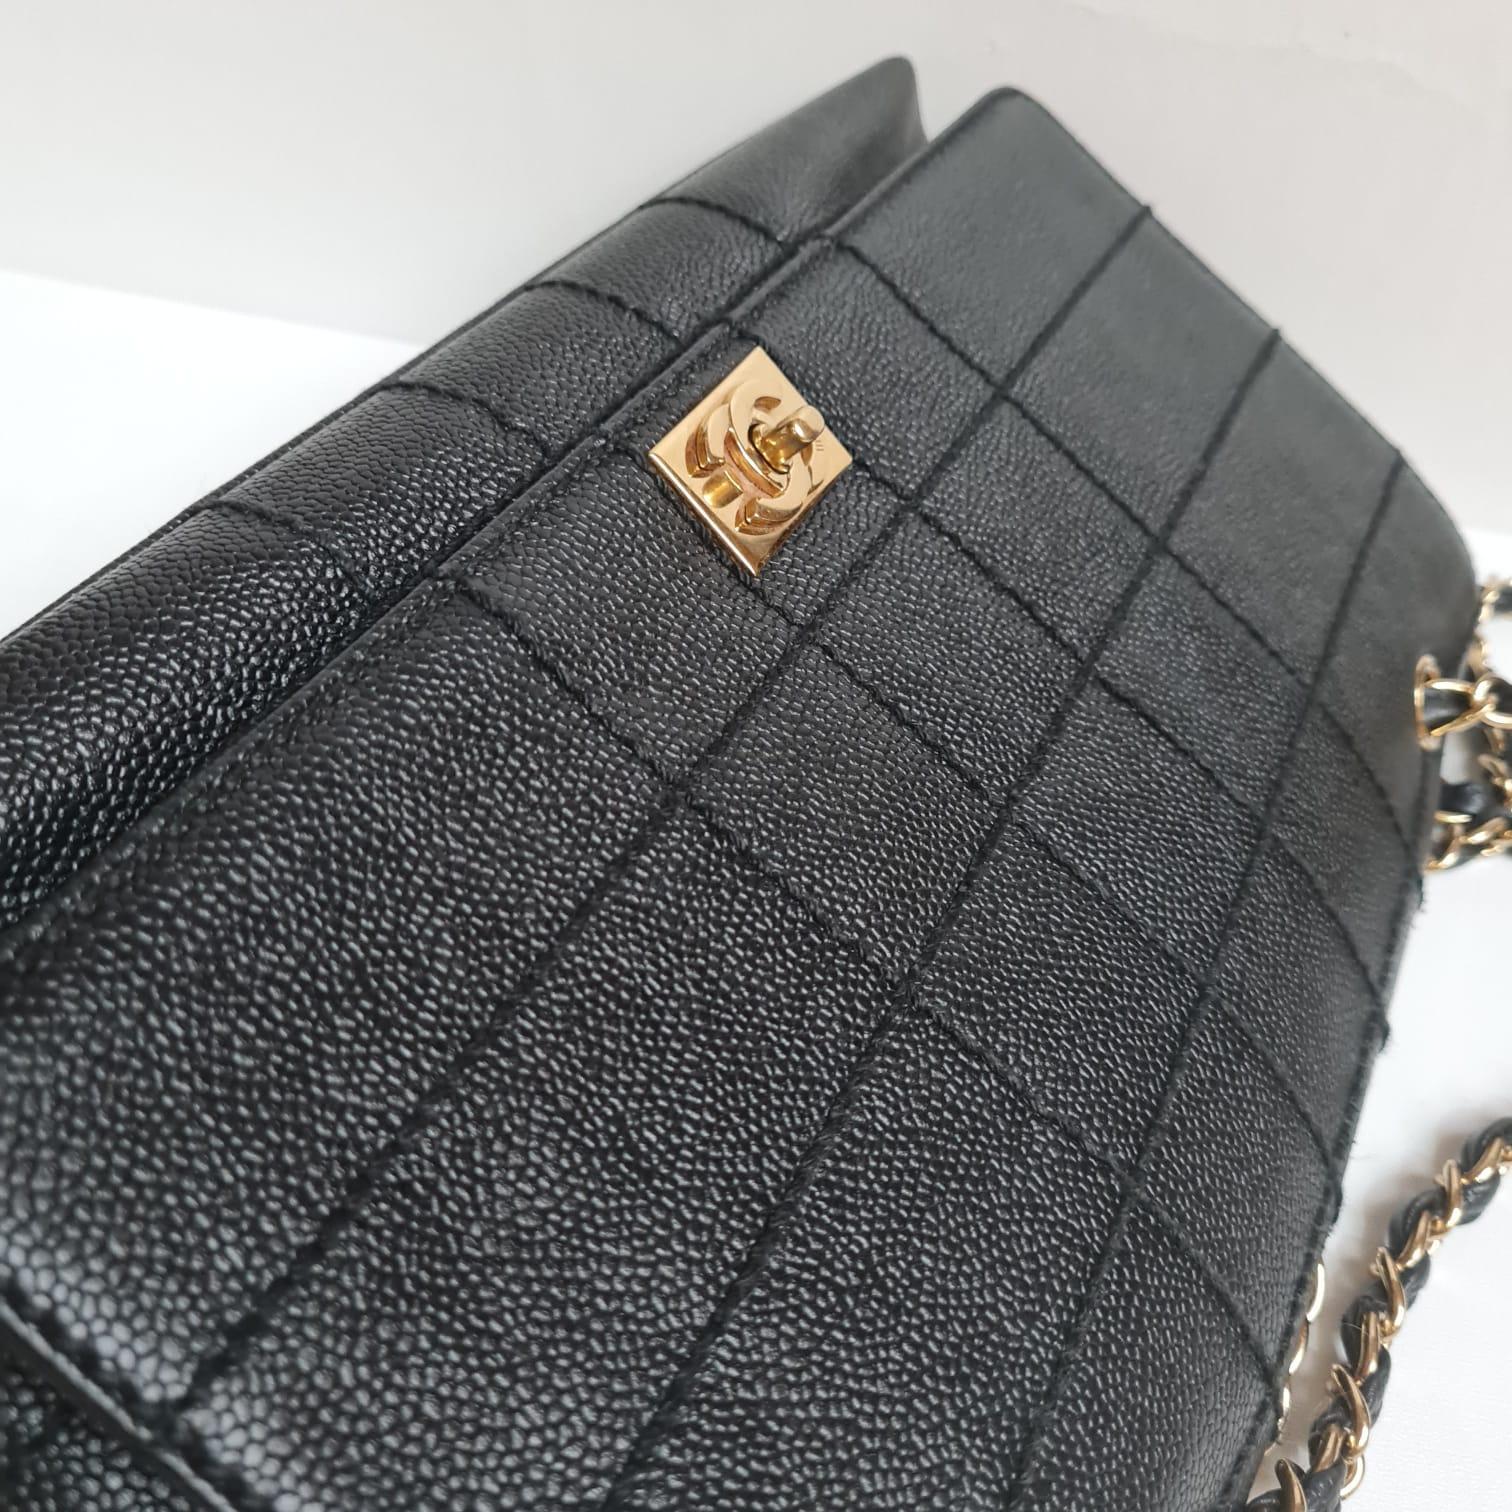 Chanel Kaviar gesteppte Tasche aus den frühen 2000er Jahren. Einzigartige Quilting-Details. In wirklich gutem Zustand. Leichte Faltenbildung auf der Lederklappe und das Hologramm hat sich aufgrund der Lagerung verfärbt. Es kommt, wie es kommt.